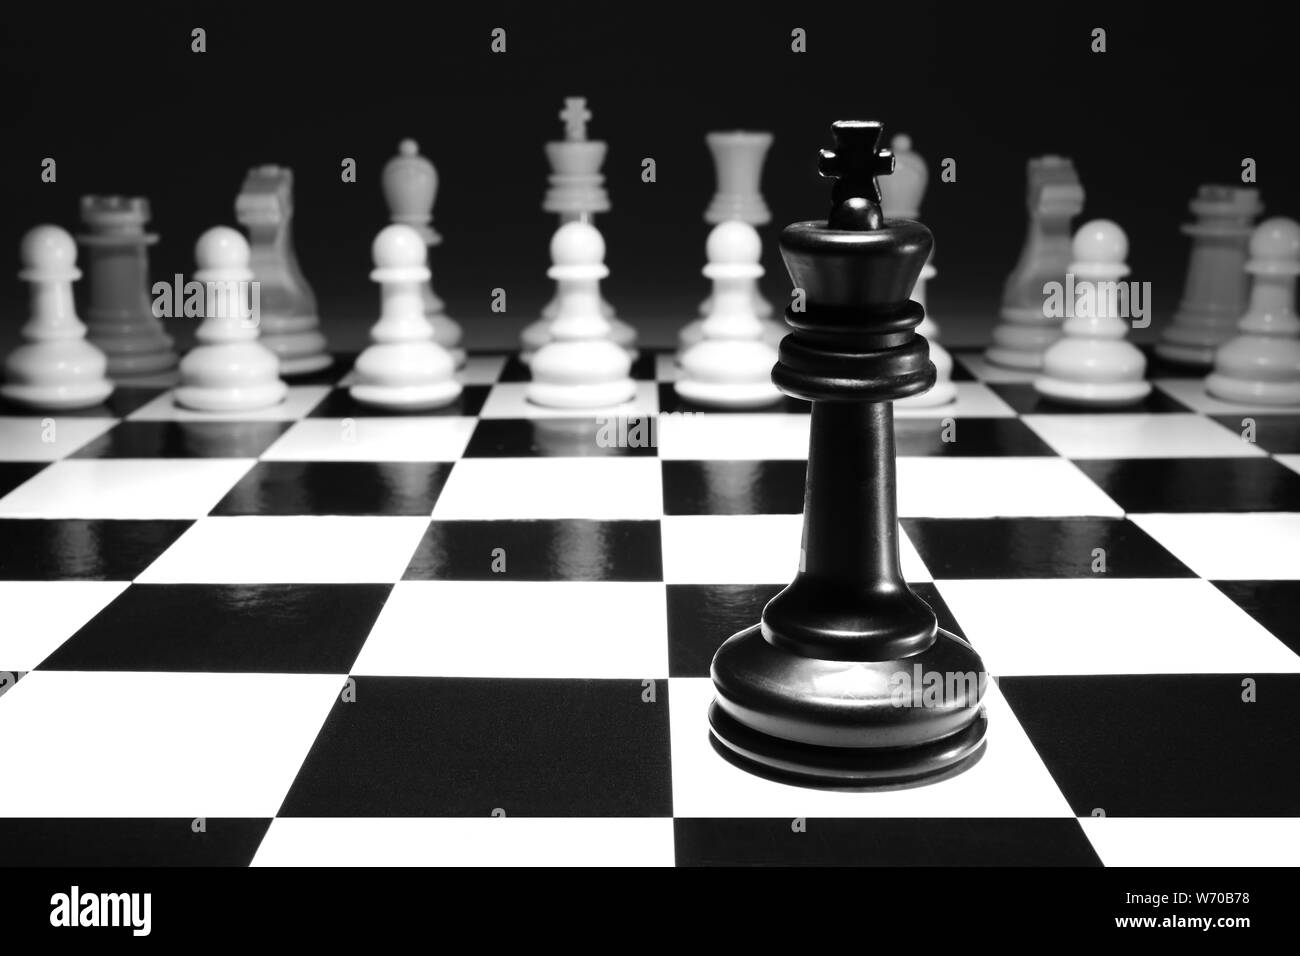 Un roi noir seul seul contre l'armée blanche un concept jeu de stratégie, selective focus Banque D'Images